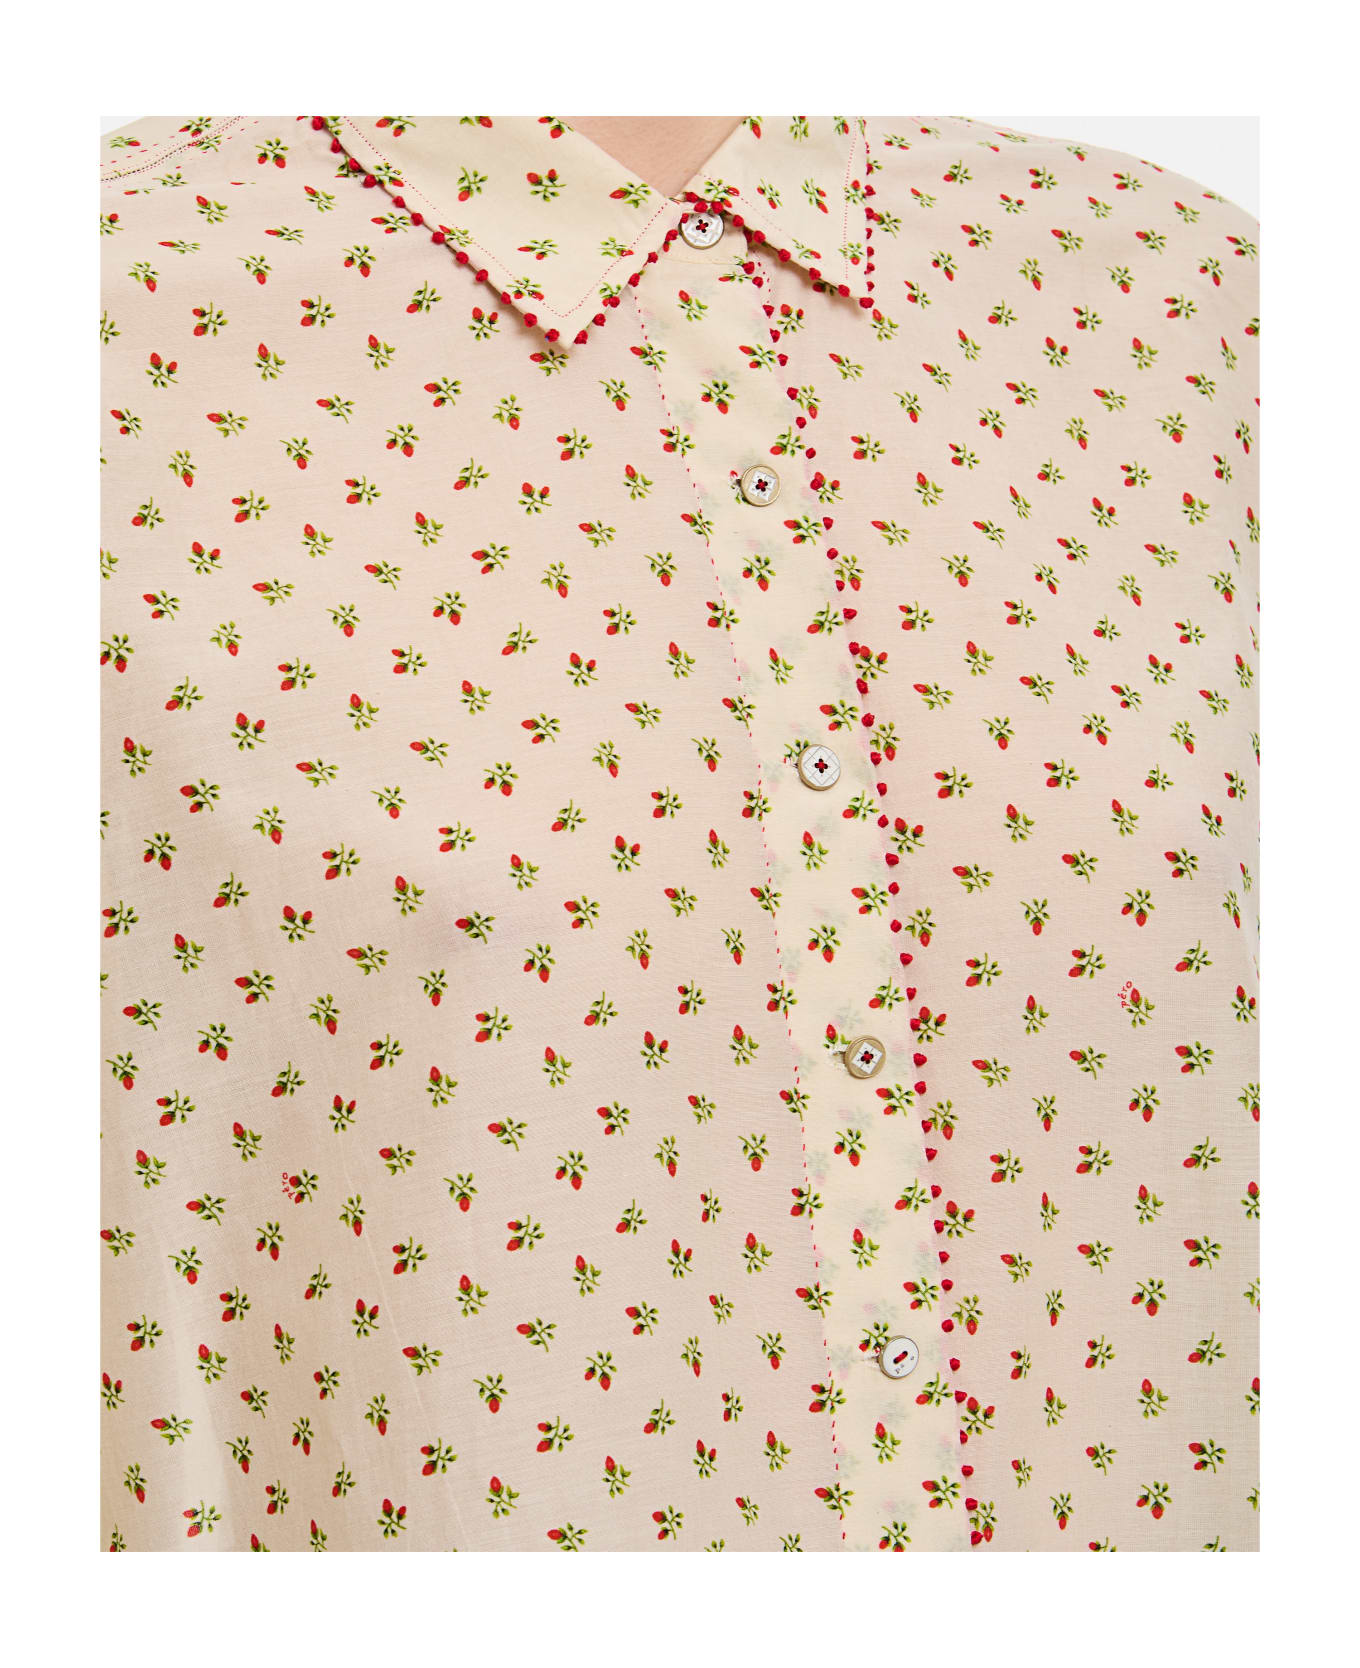 Péro Pattern Cotton Shirt - As Multi ショートパンツ